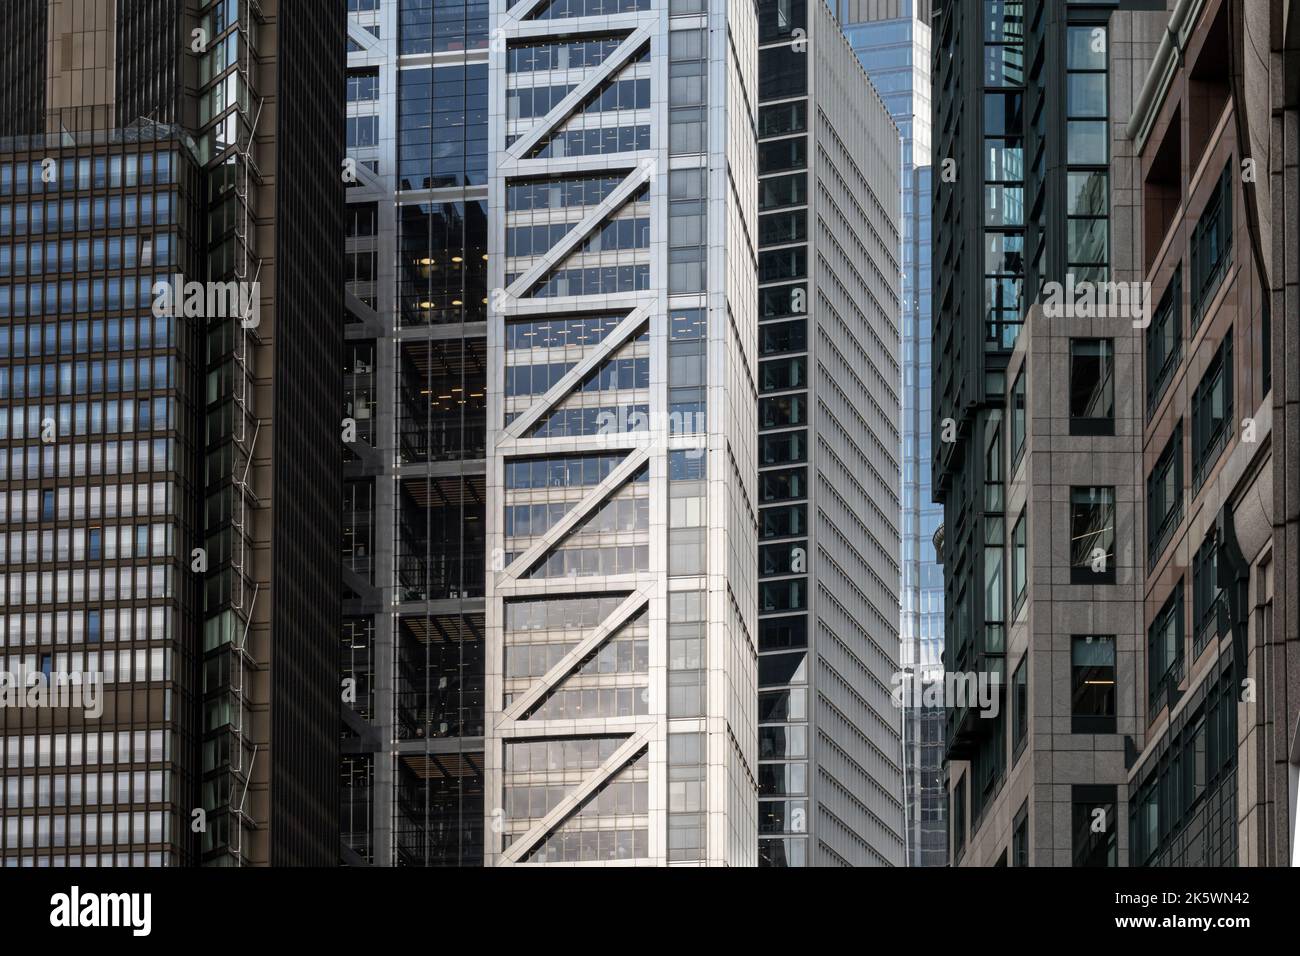 Dettagli architettonici esterni della collezione di moderne facciate di edifici architettonici per uffici nella City of London nel Regno Unito Foto Stock